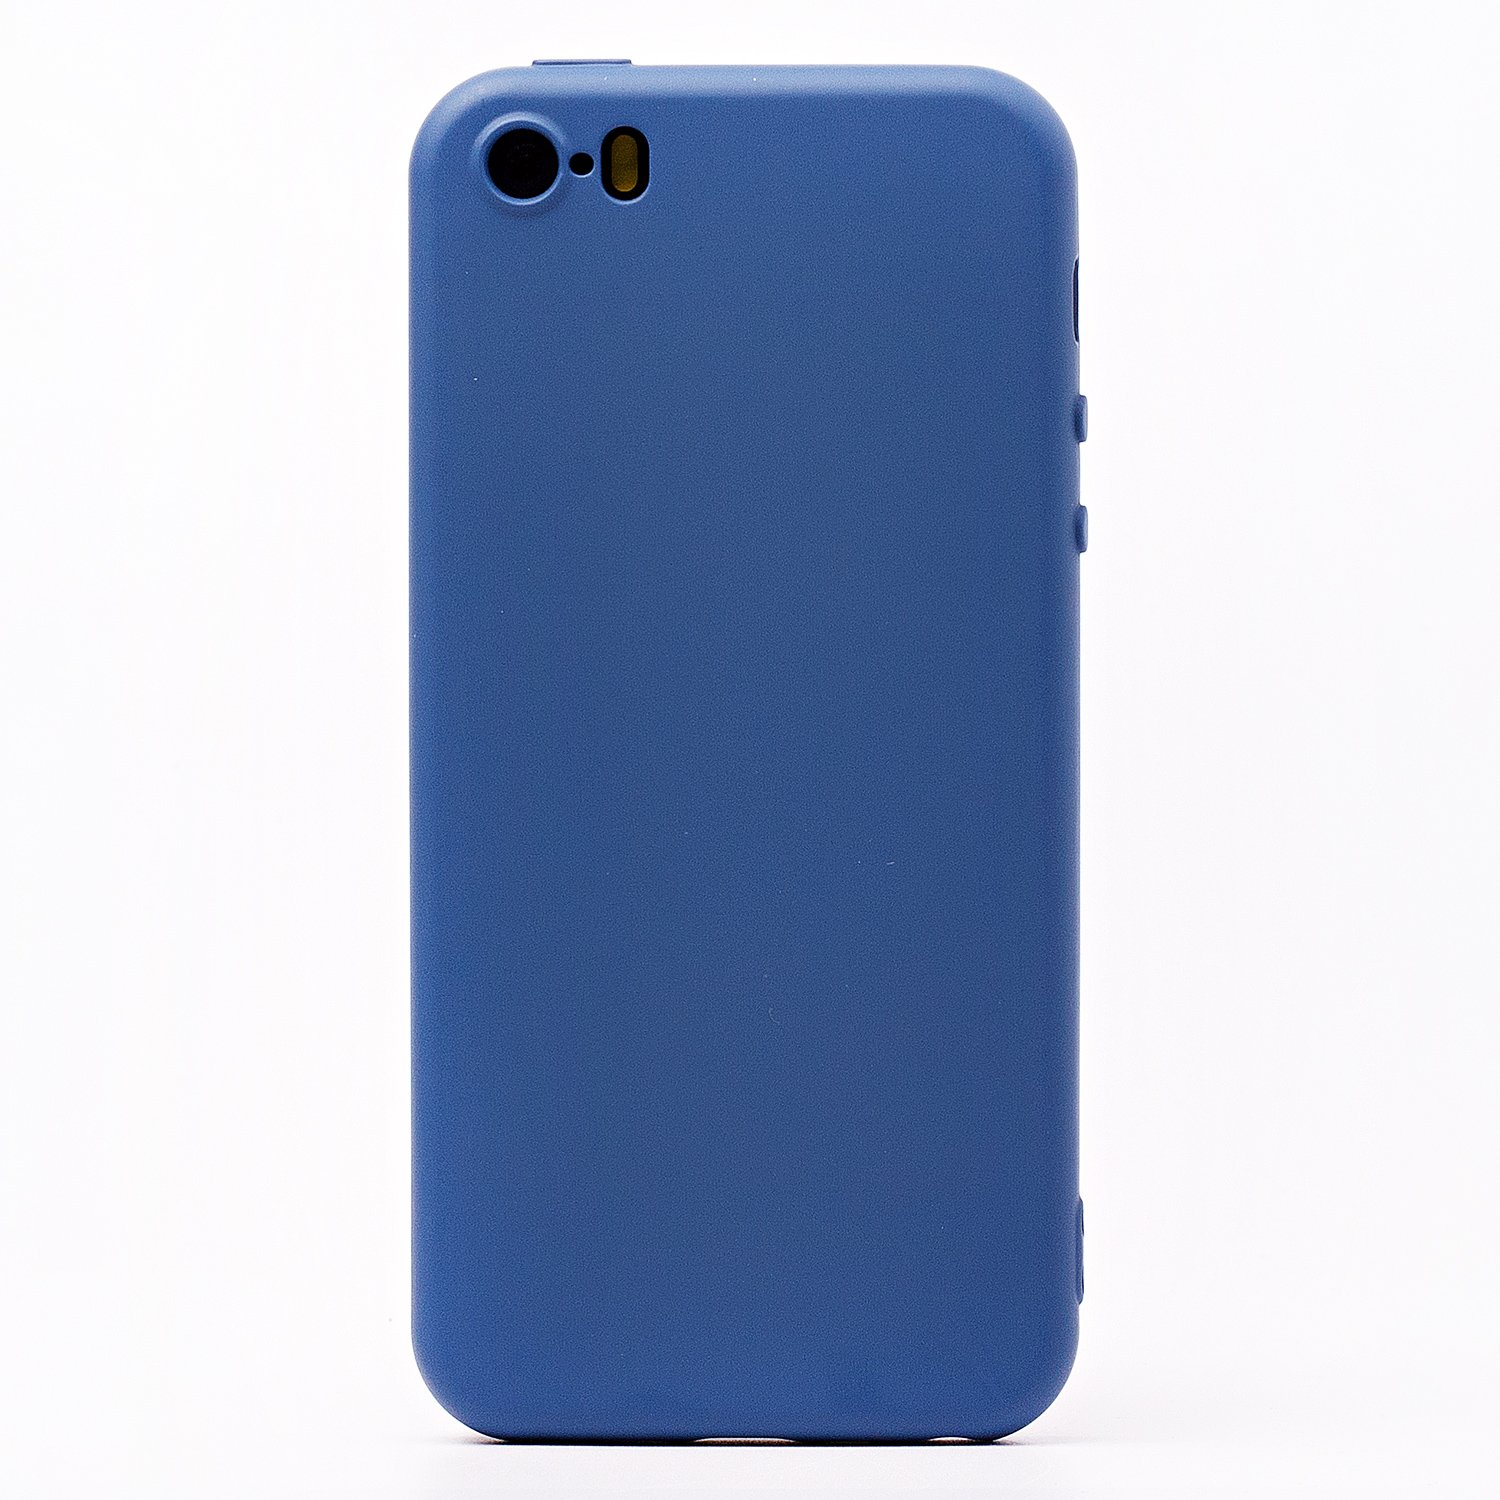 Чехол-накладка Activ Original Design для смартфона Apple iPhone 5/5s/SE, soft-touch, синий (115582)